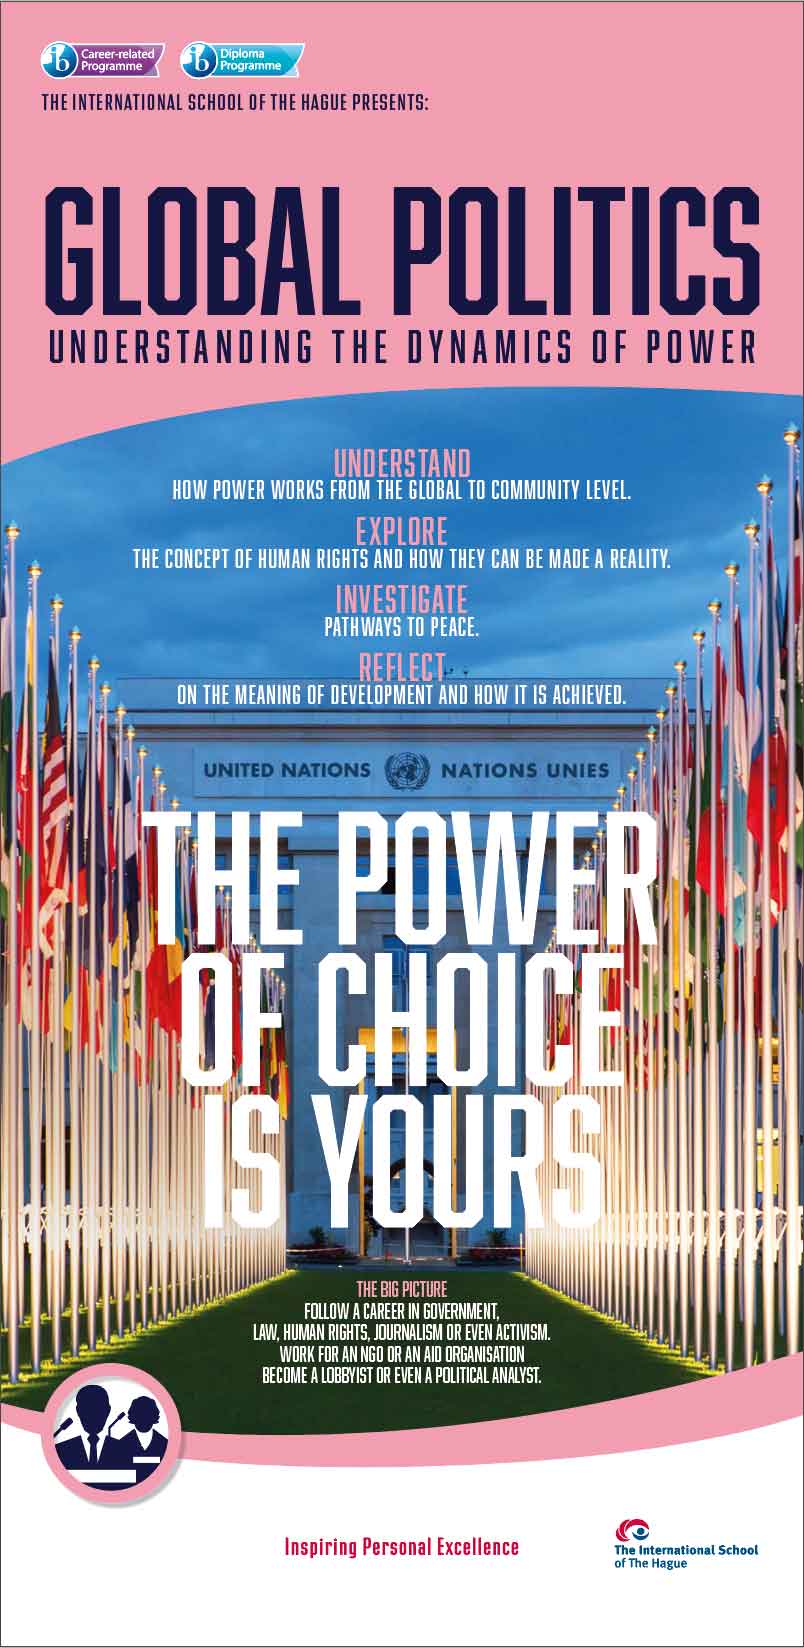 Subject Choice banner voor Global Politics voor International School of The Hague